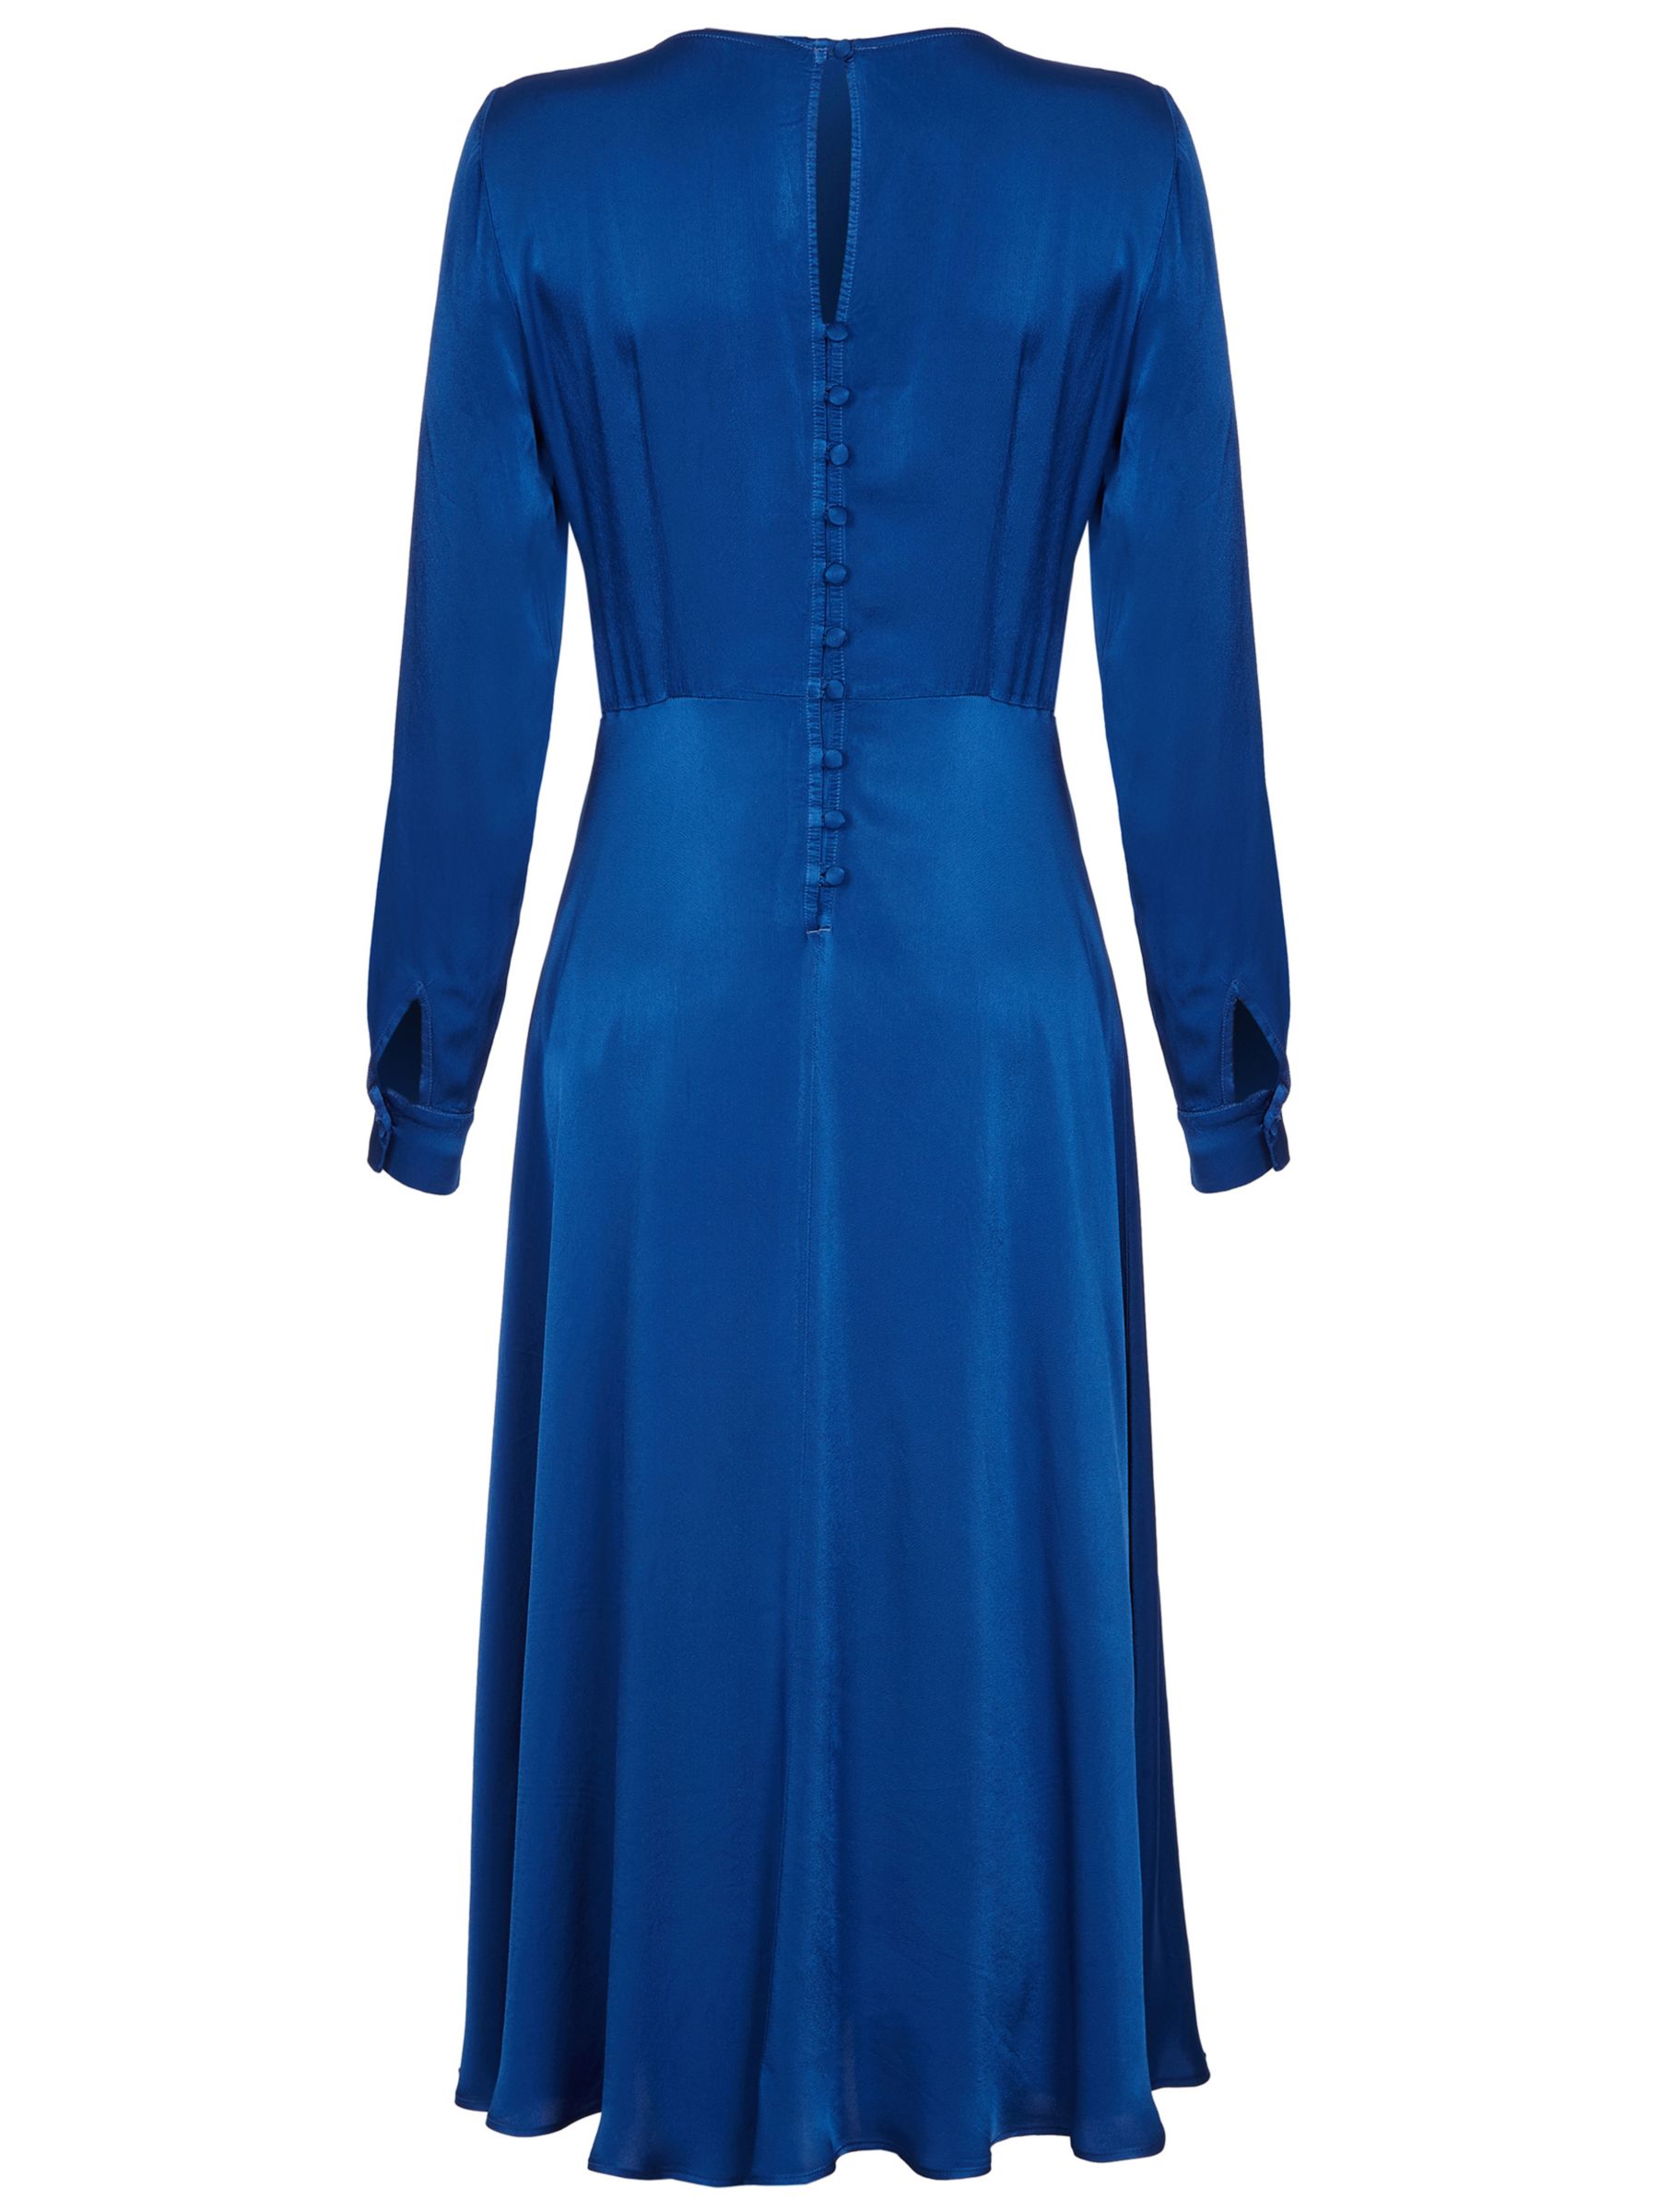 Ghost Mindy Dress, Deep Blue